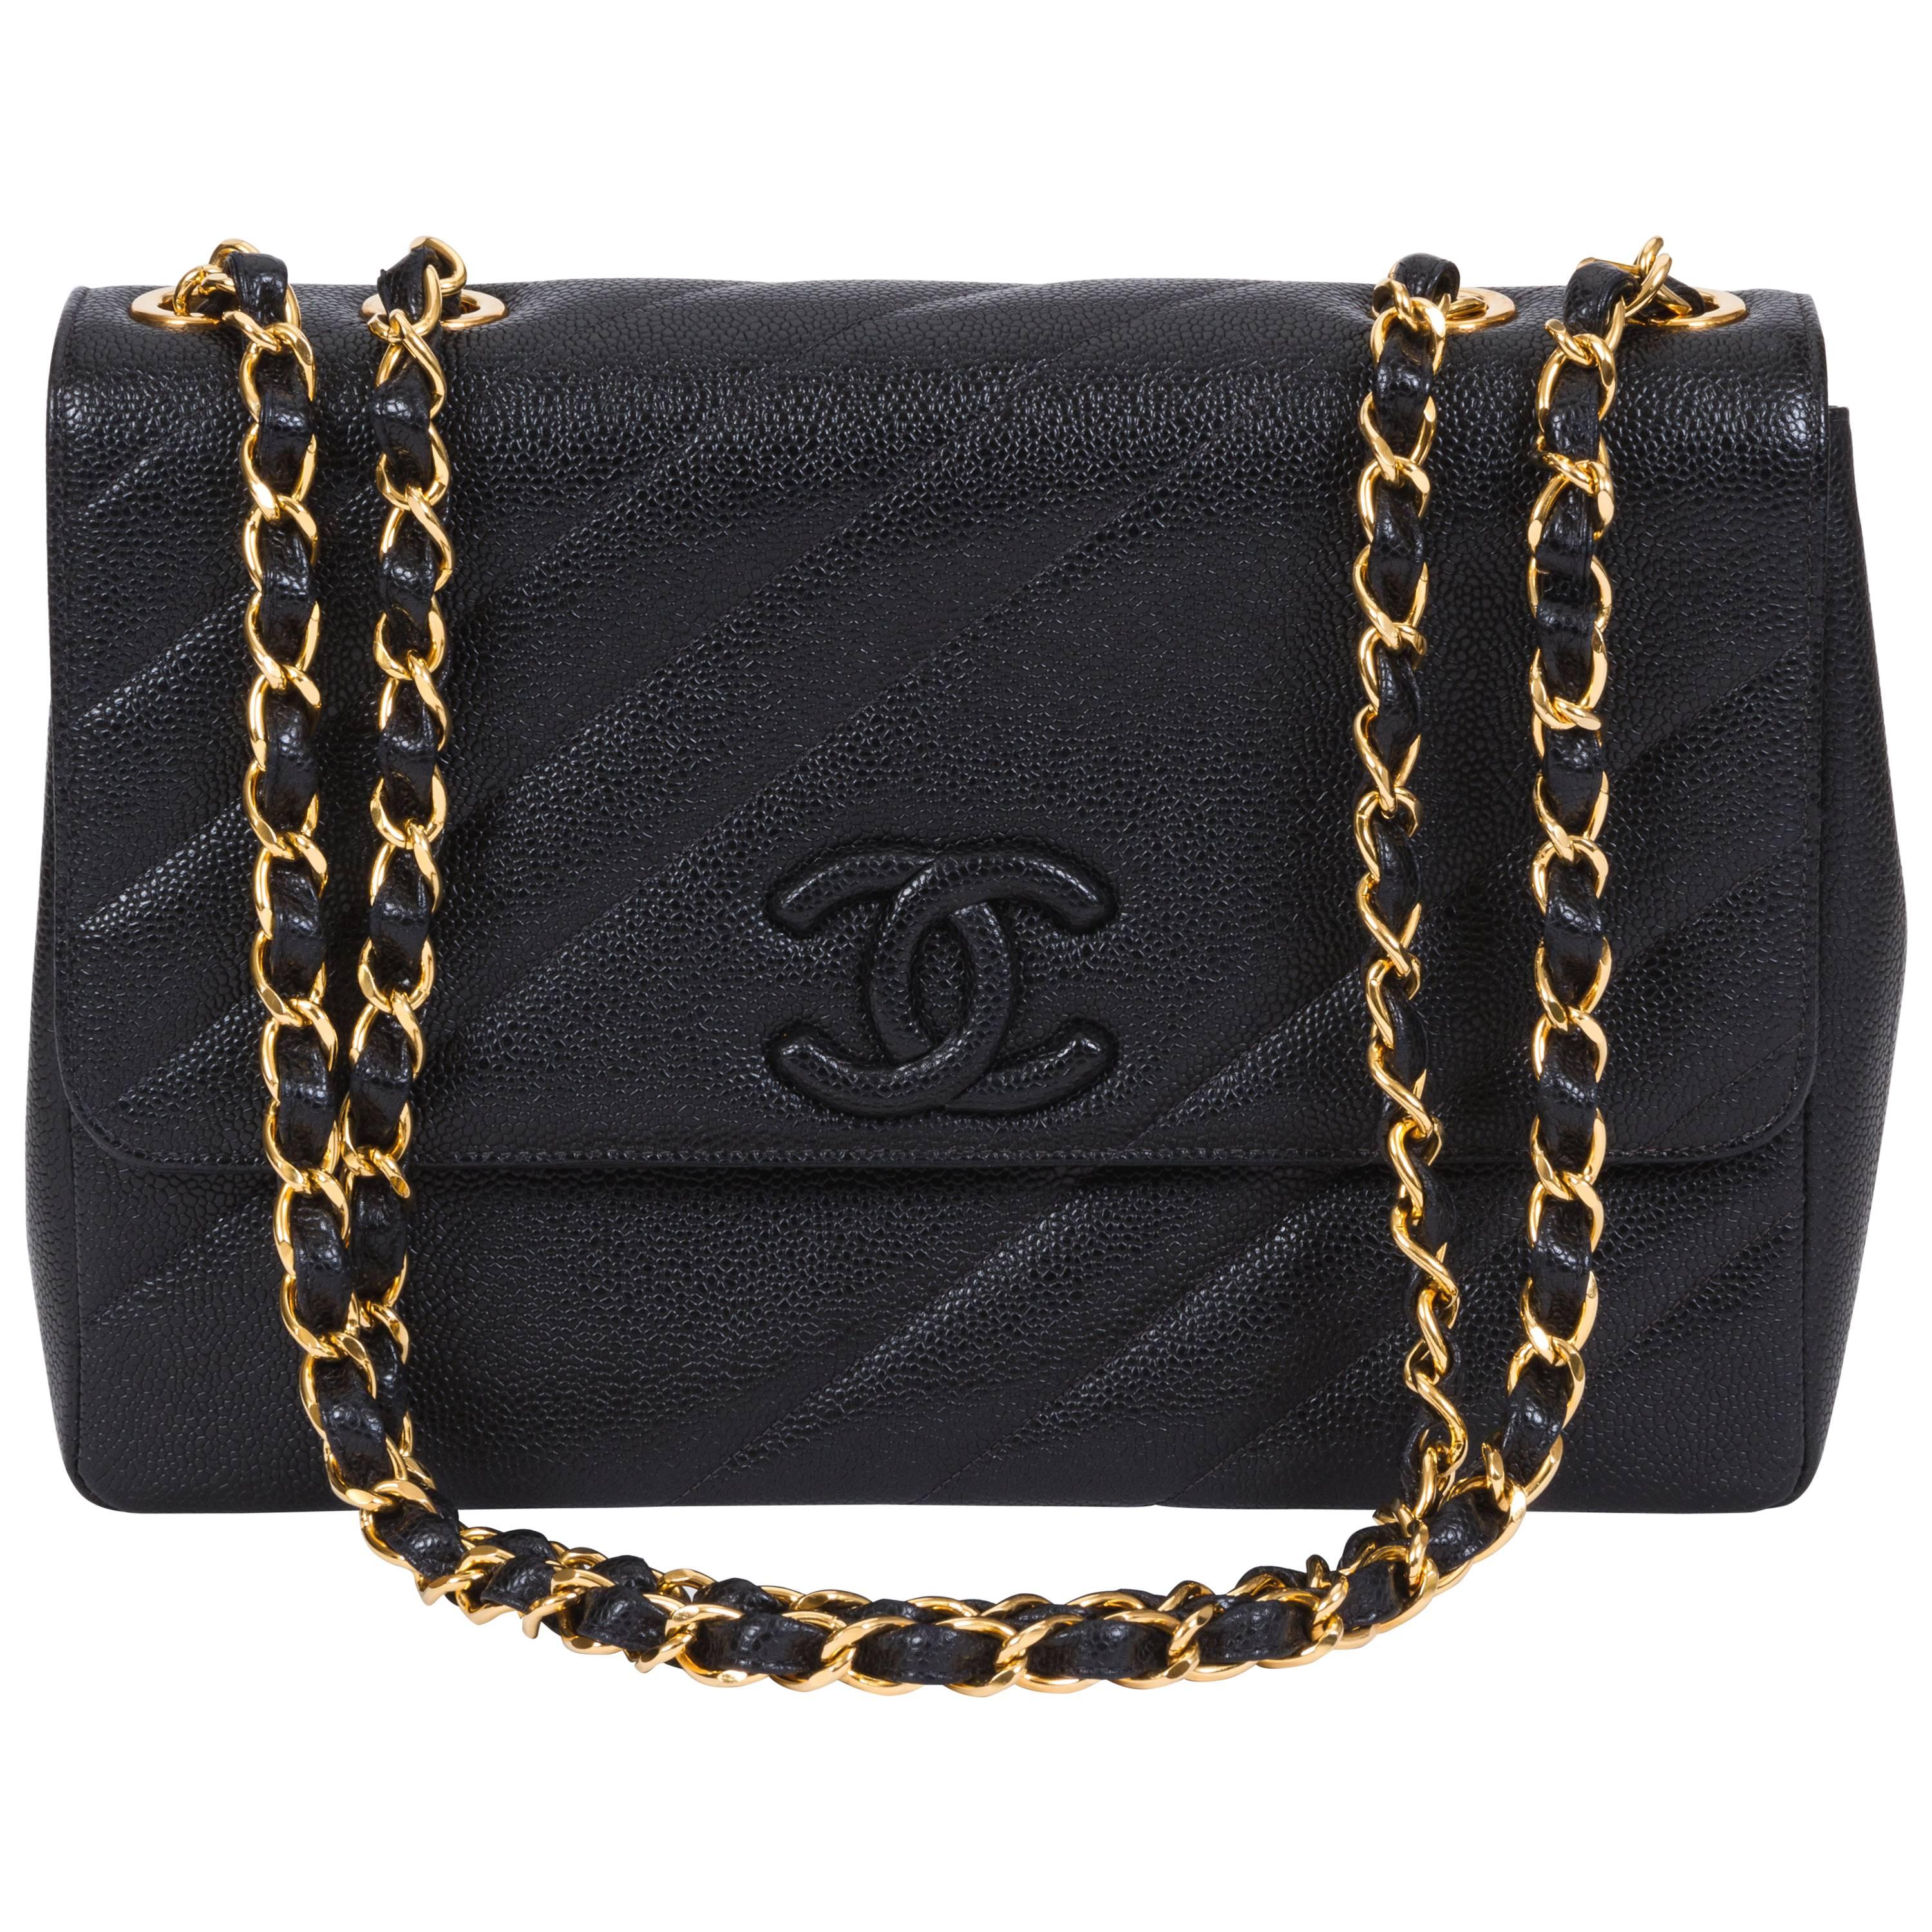 Chanel Black Caviar Diagonal Jumbo Bag